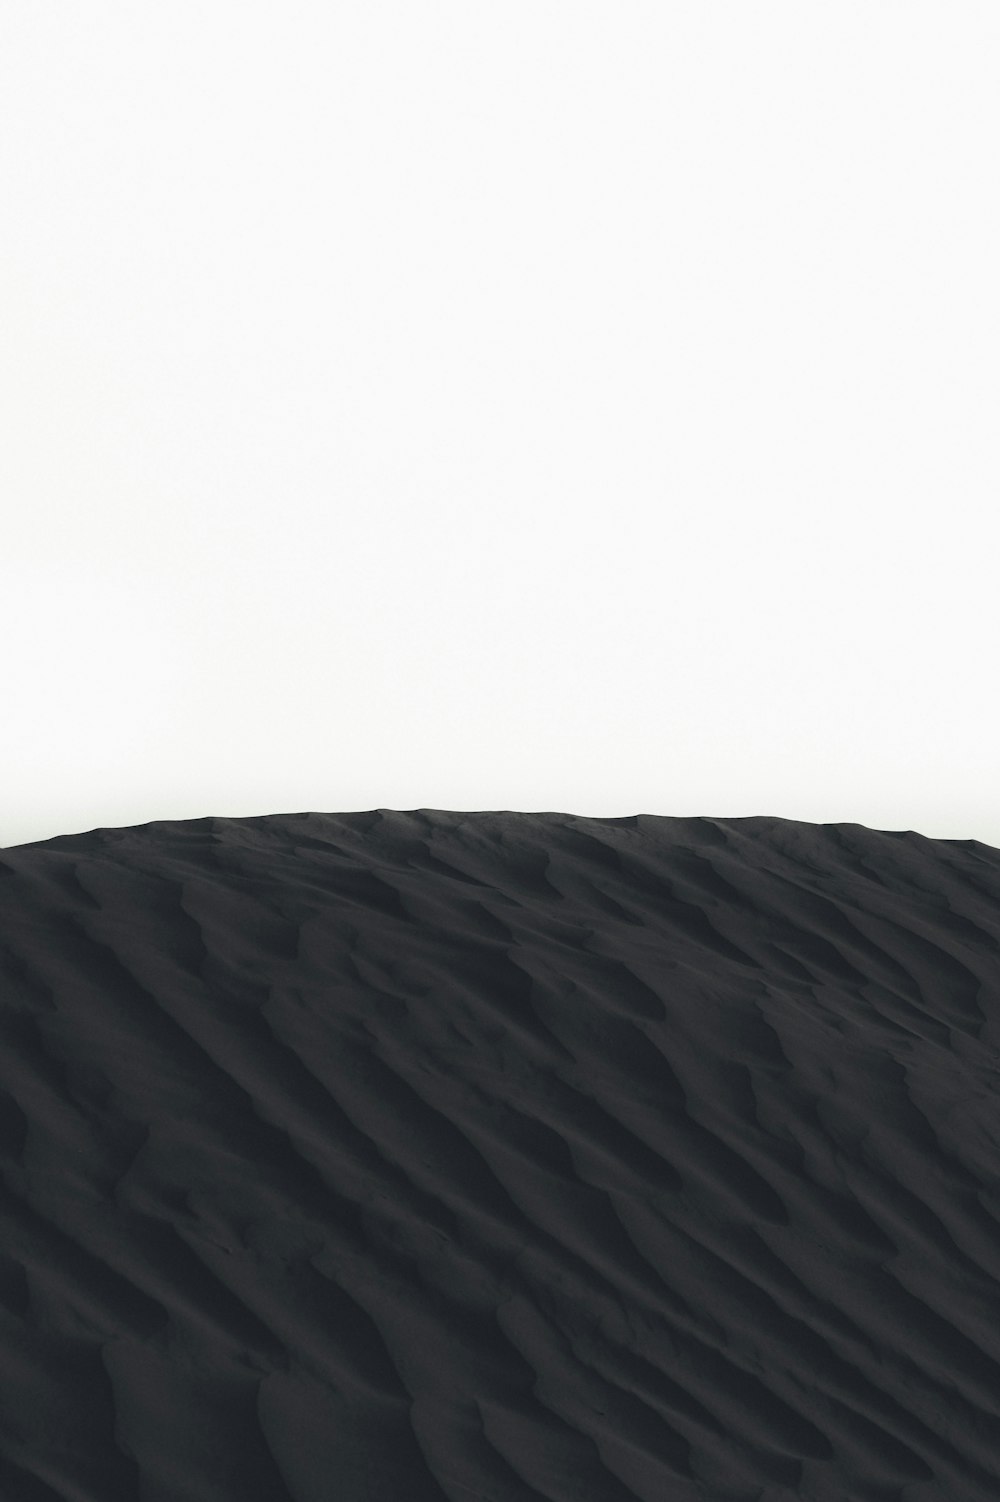 fotografia de paisagem de dunas de areia